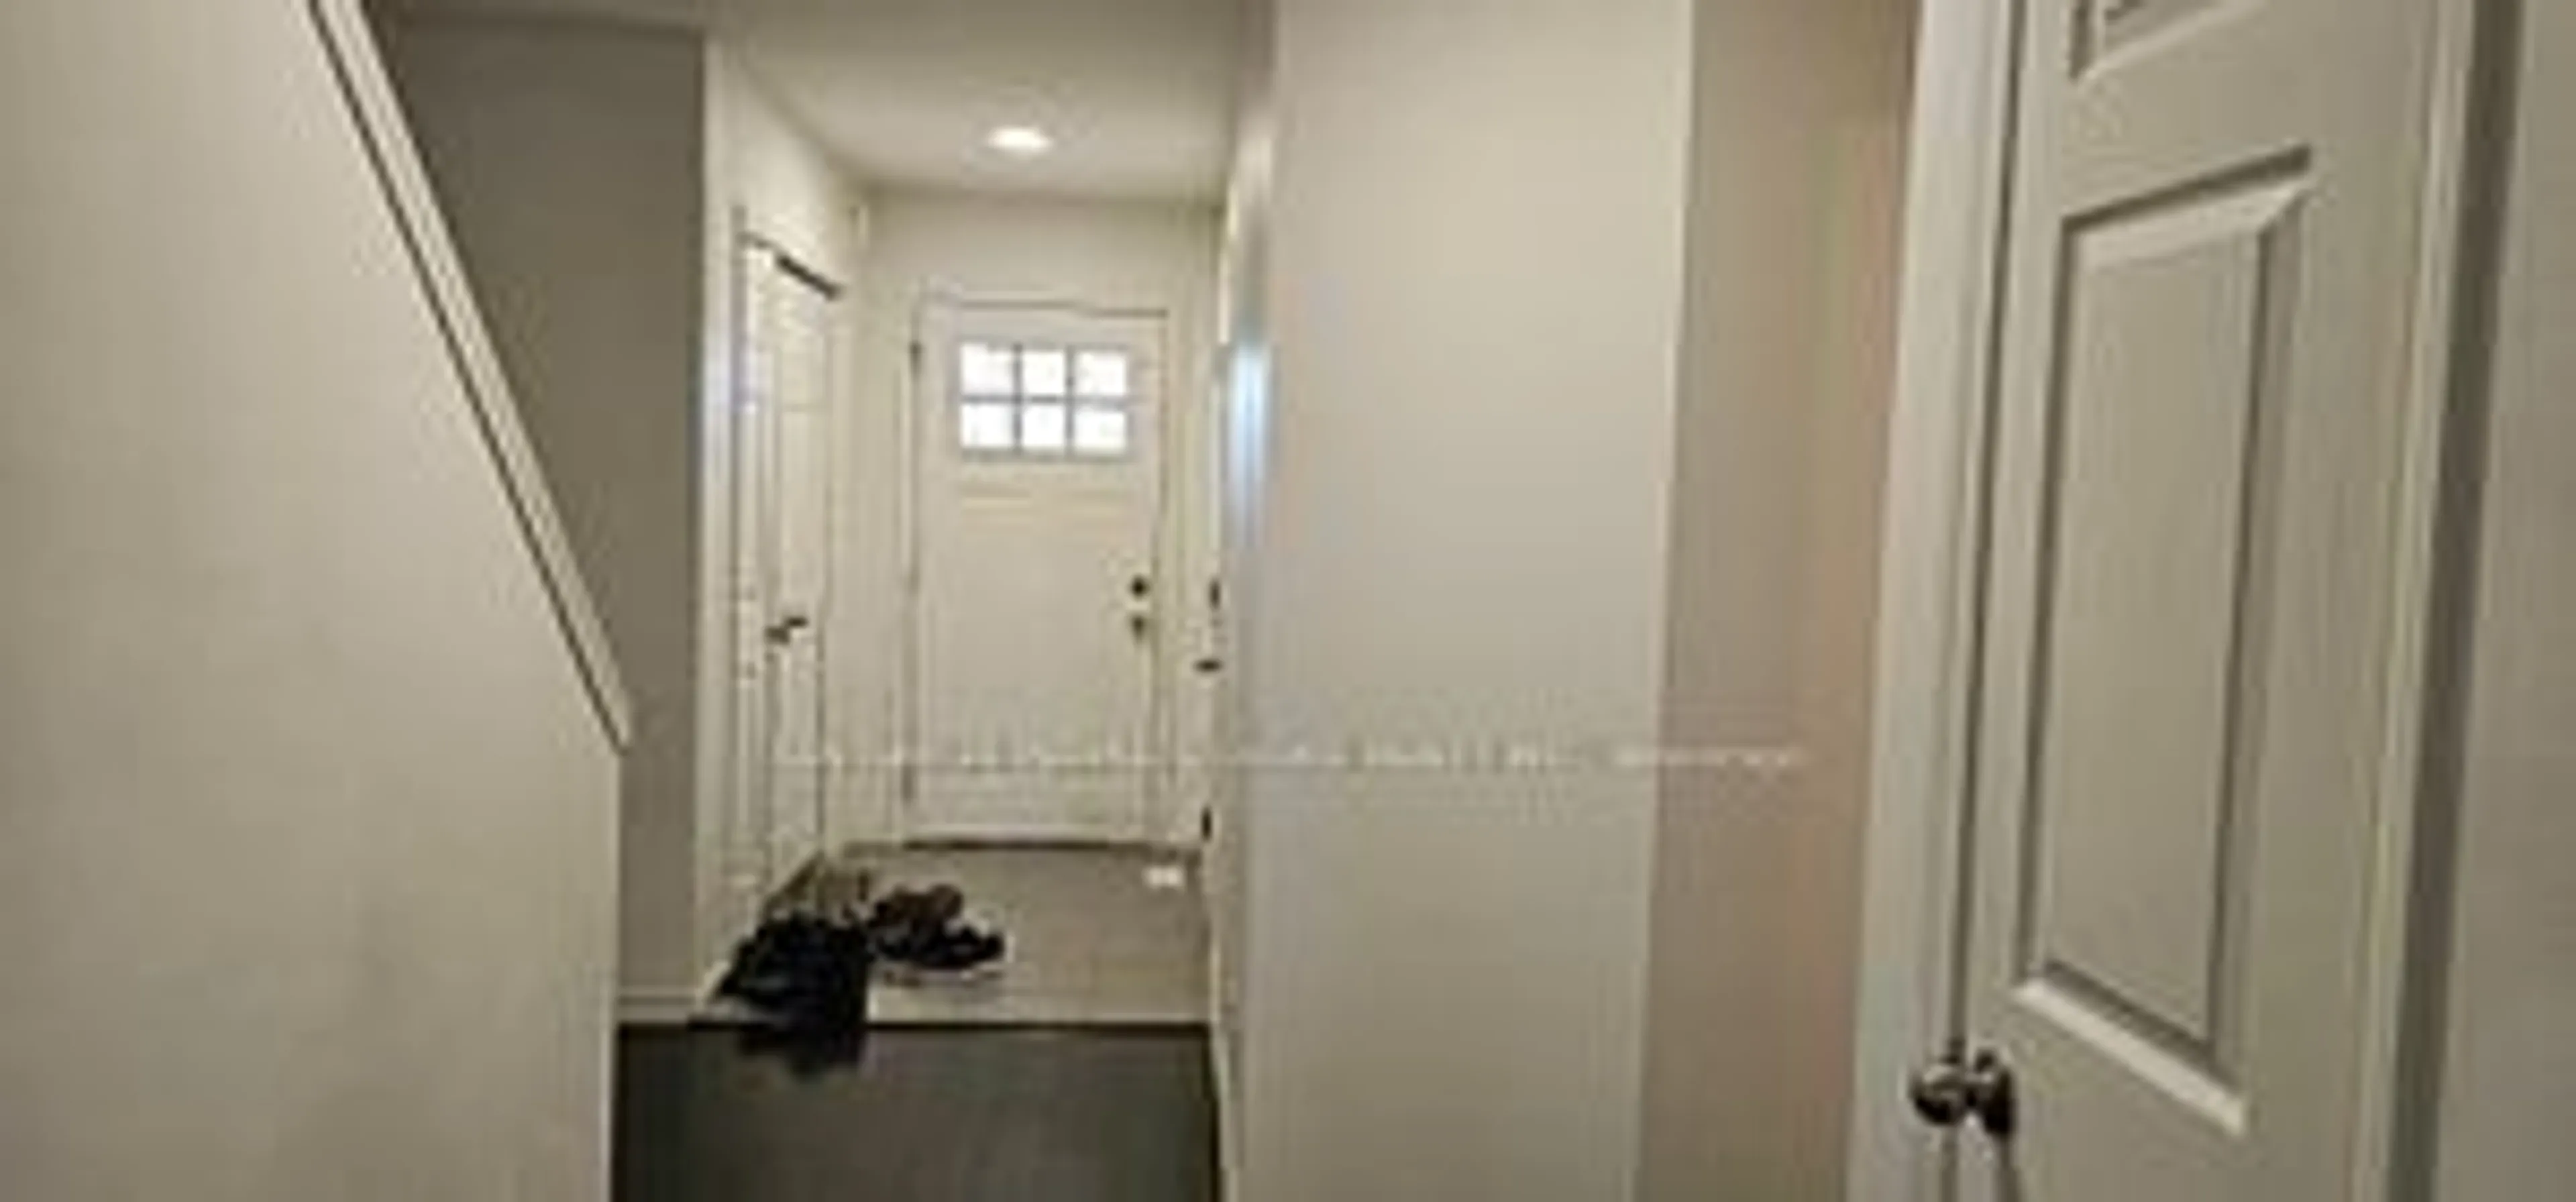 Indoor entryway for 135 Hardcastle Dr #87, Cambridge Ontario N1S 0B6